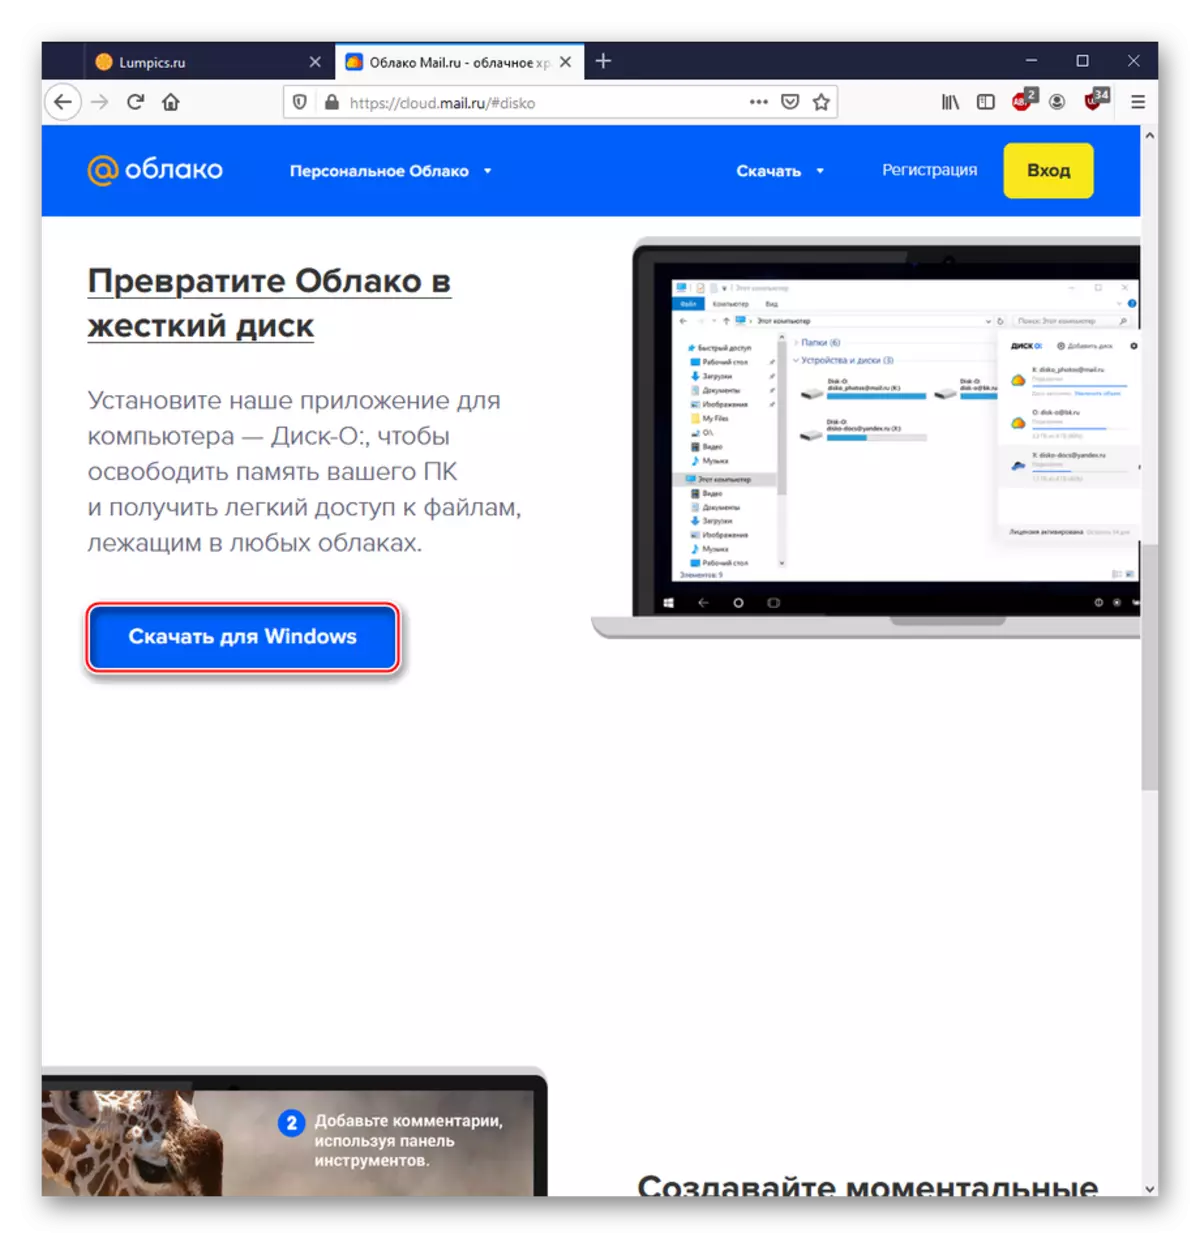 下载PC程序与服务cloud@mail.ru工作